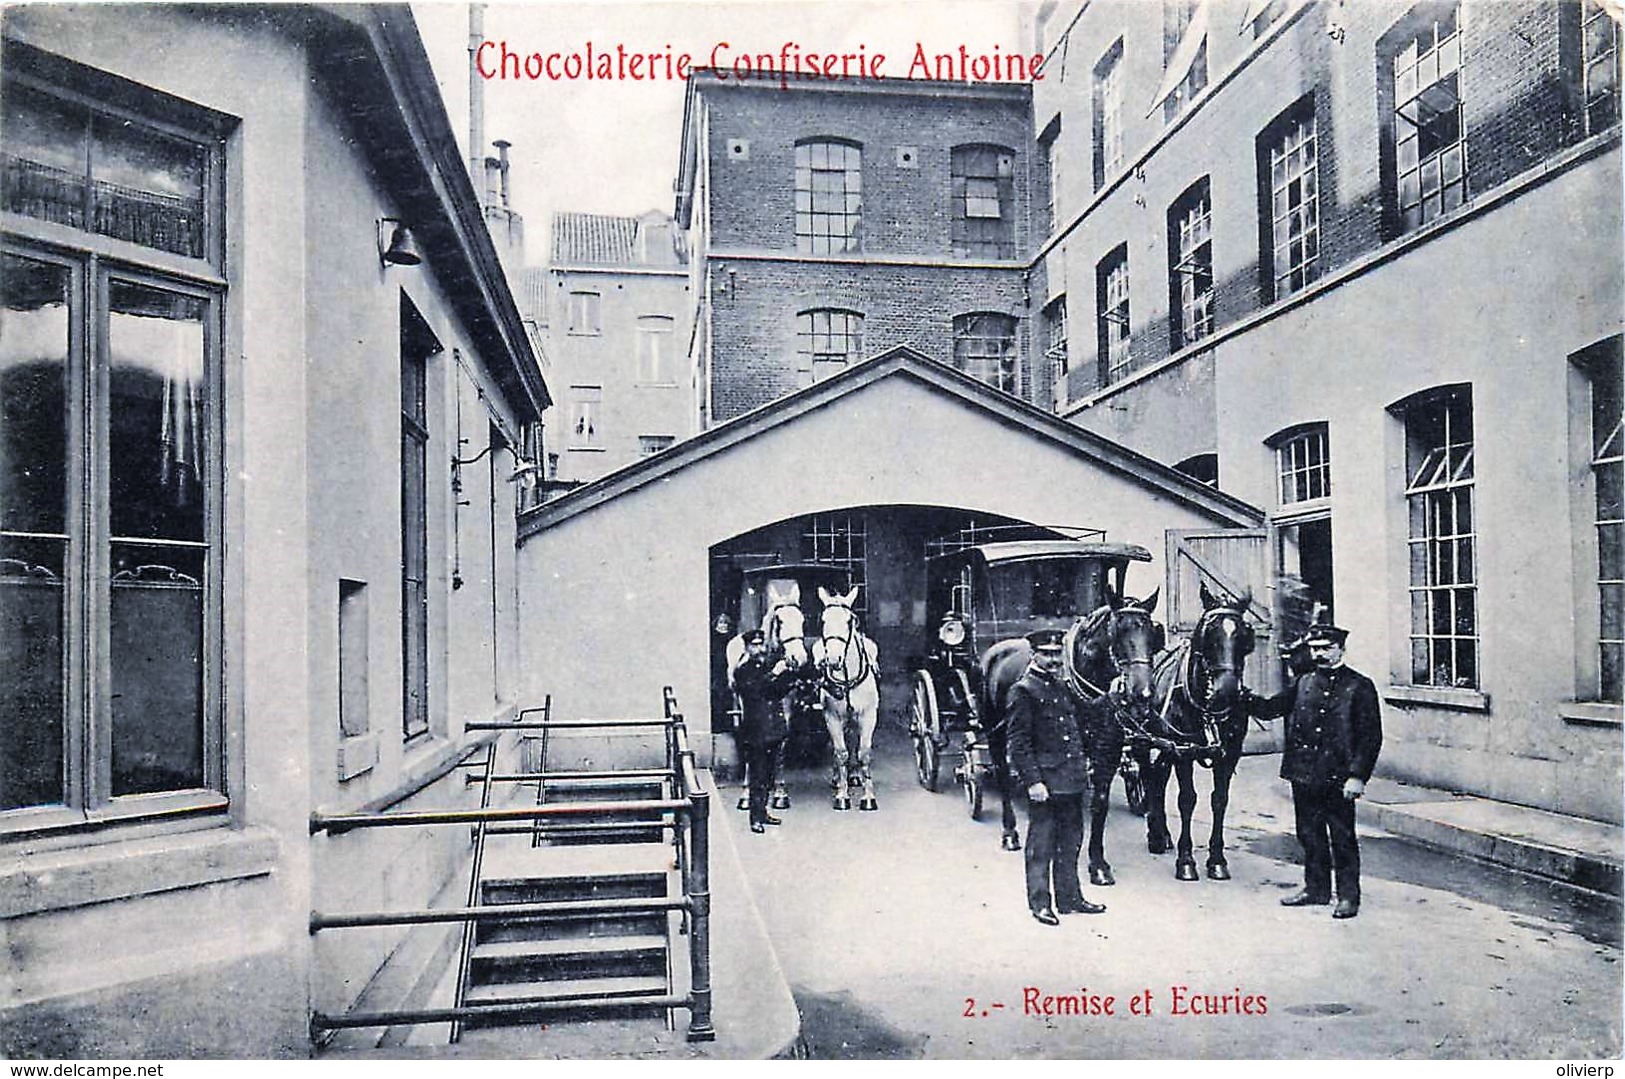 Bruxelles-Ixelles - Série Complète De La Chocolaterie-Confiserie ANTOINE - Ixelles - Elsene